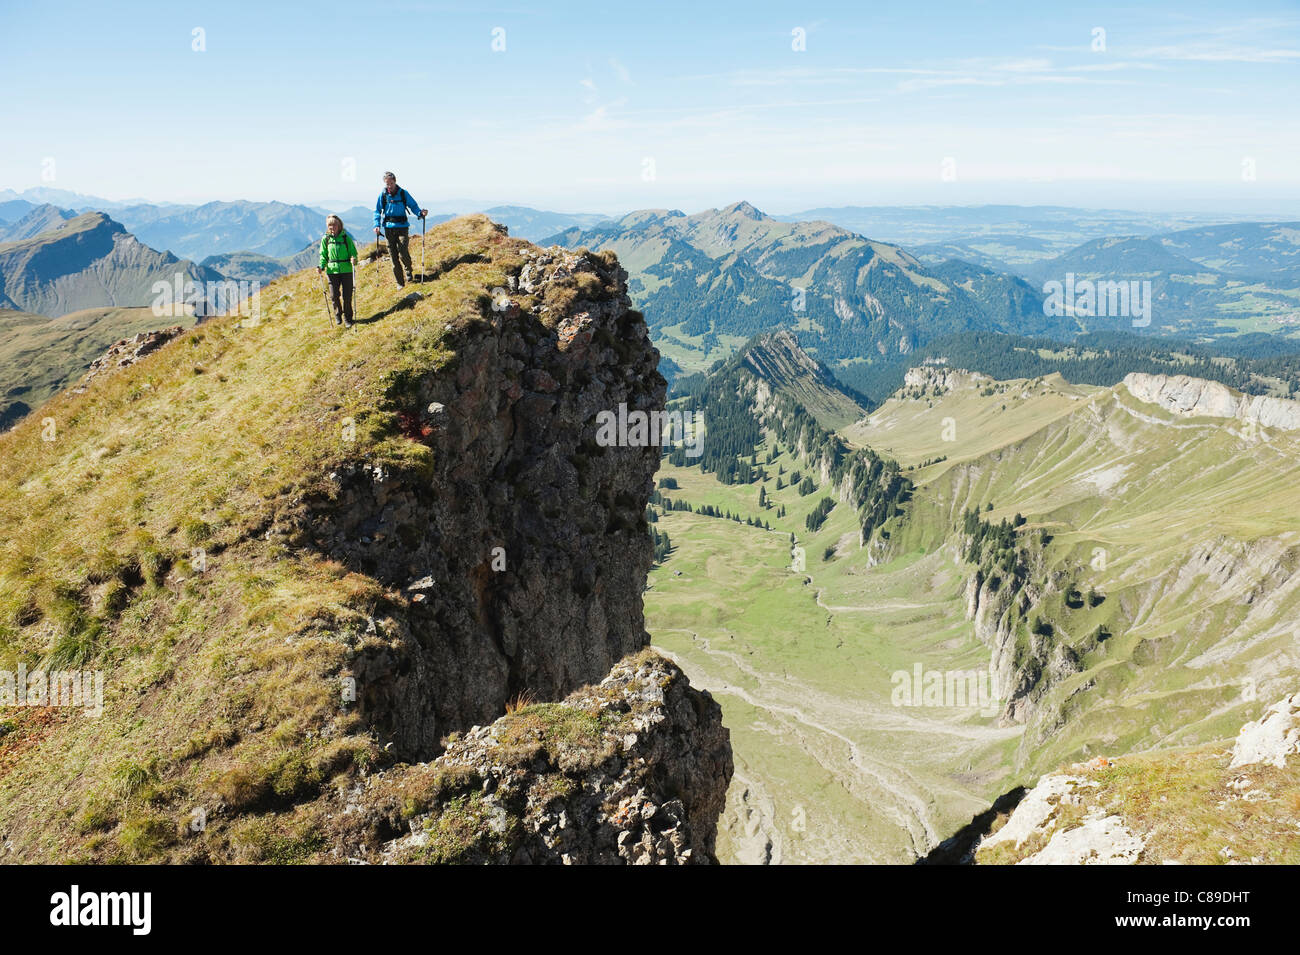 L'Autriche, Kleinwalsertal, l'homme et la femme en randonnée sur les bord de la falaise Banque D'Images